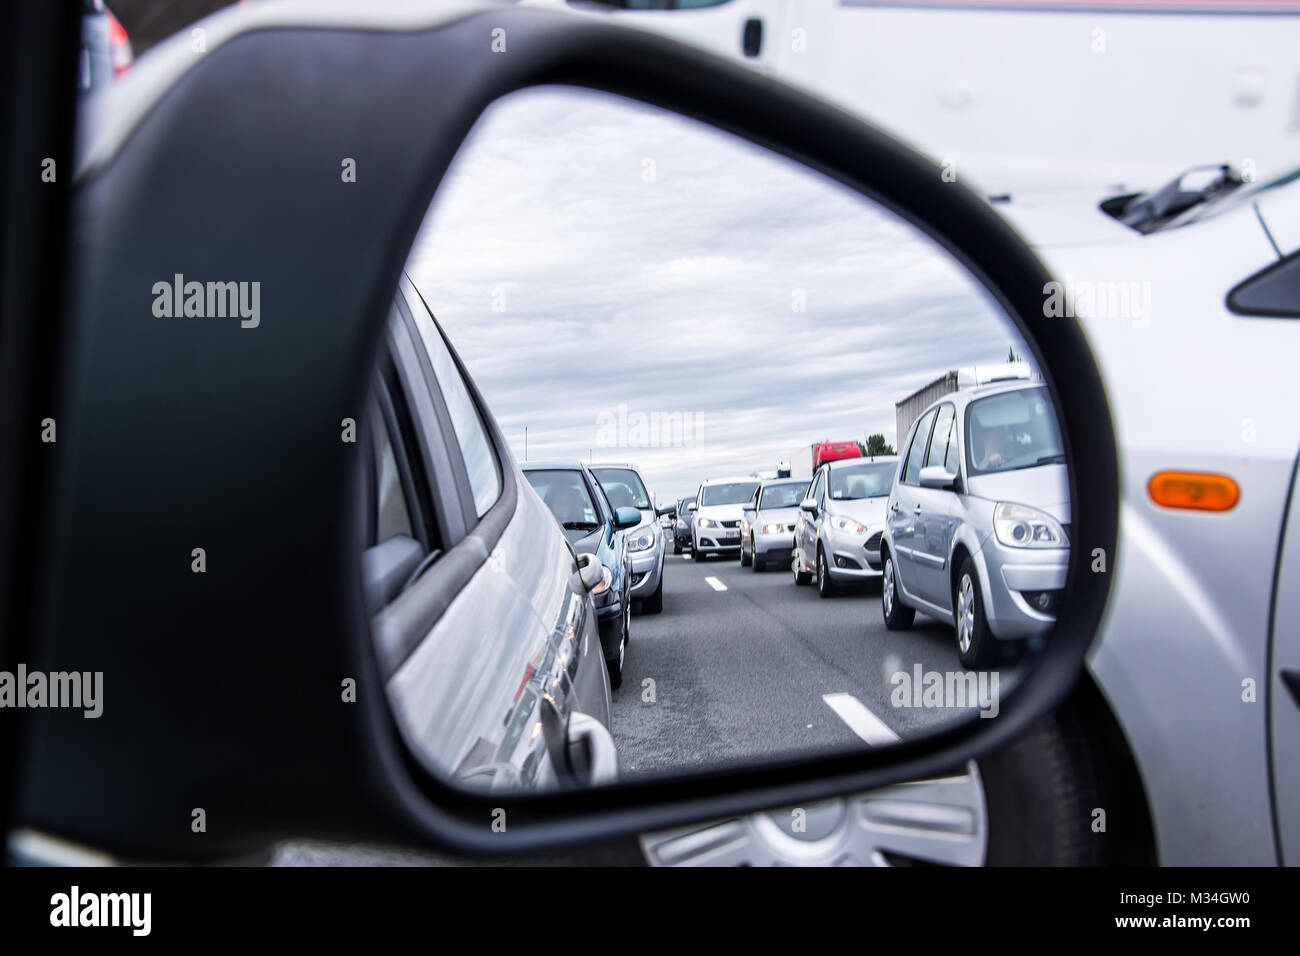 Foto zum Thema Auto-Seitenspiegel, der das Auto tagsüber auf der Straße  zeigt – Kostenloses Bild zu Auto auf Unsplash